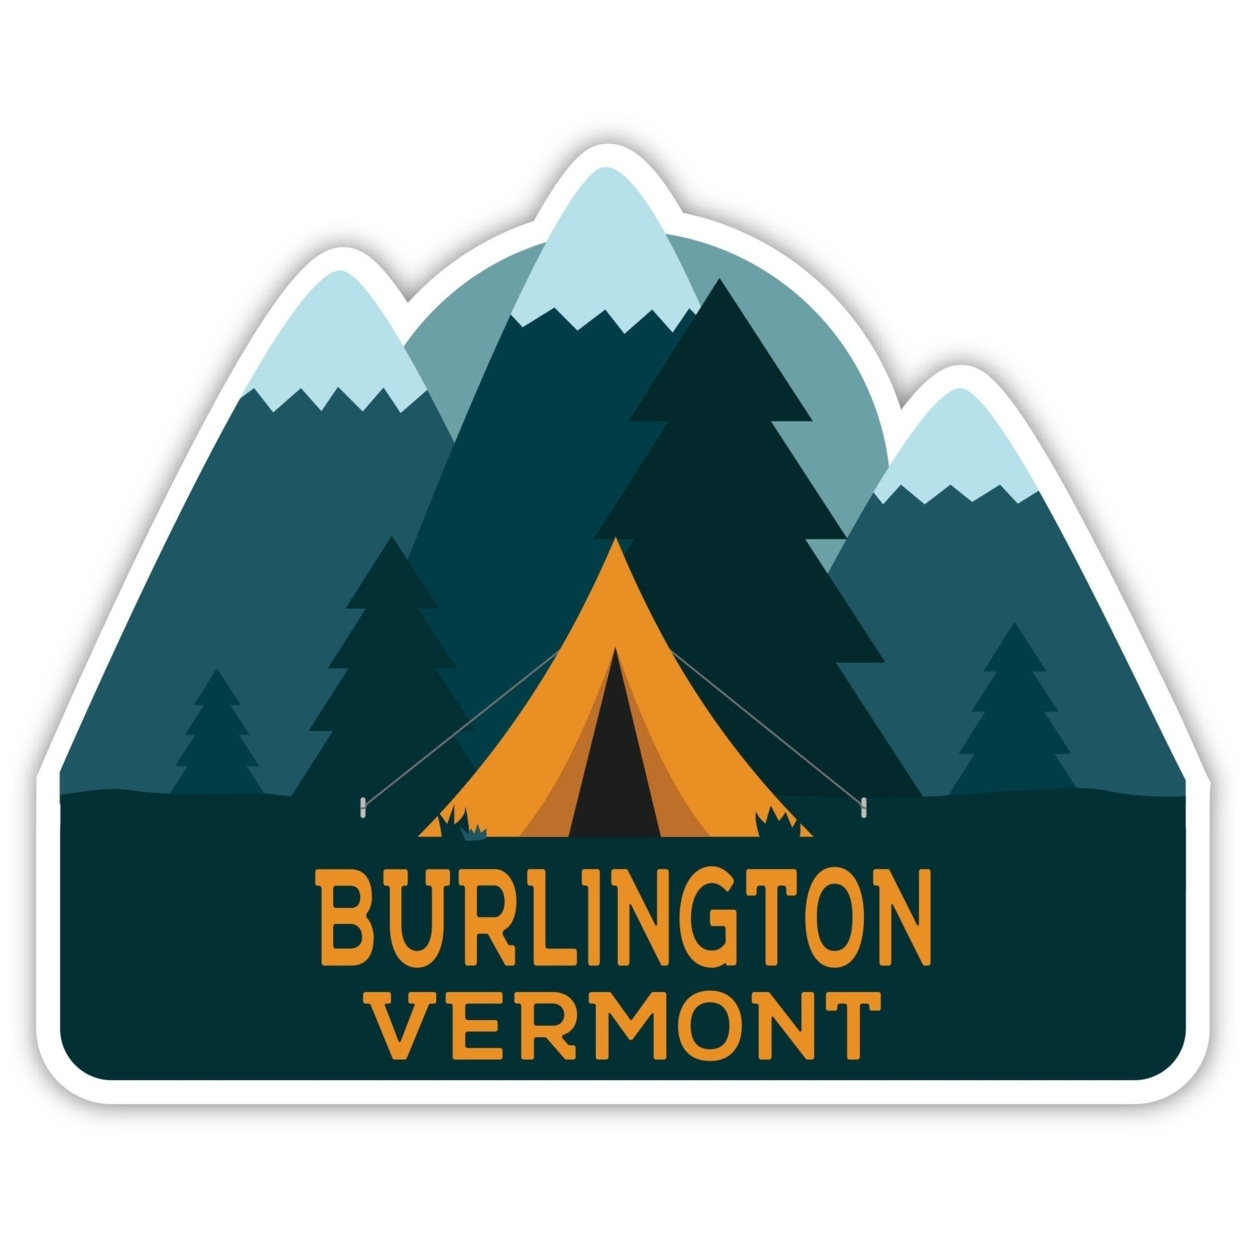 Burlington Vermont Souvenir Decorative Stickers (Choose Theme And Size) - Single Unit, 6-Inch, Tent